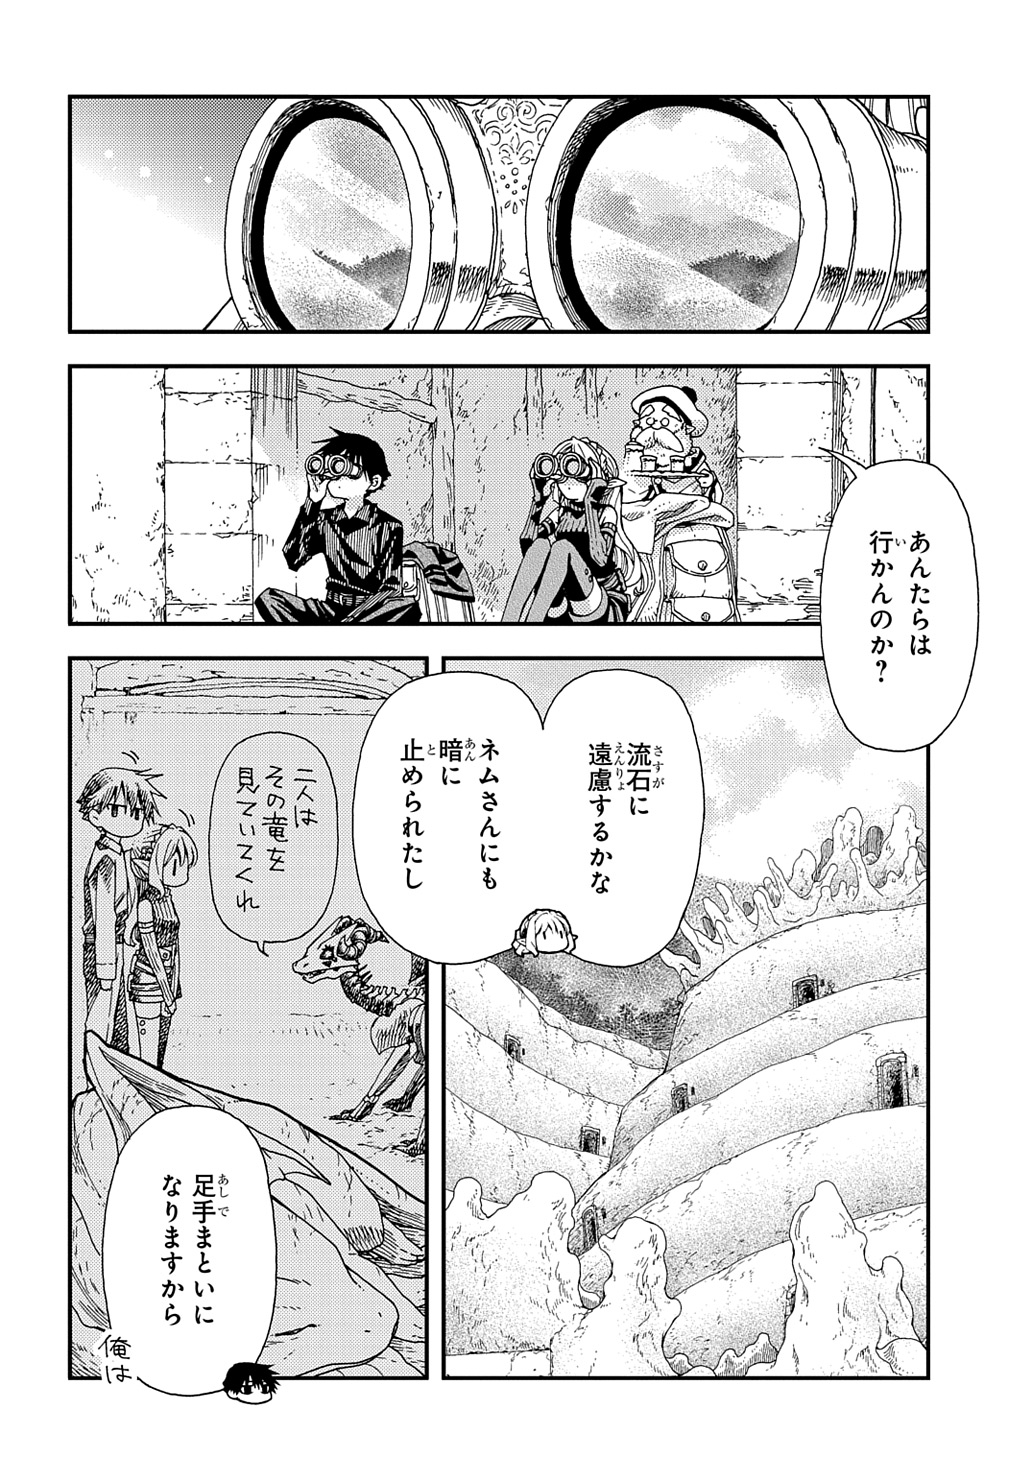 Hone Dragon no Mana Musume - Chapter 31.1 - Page 2